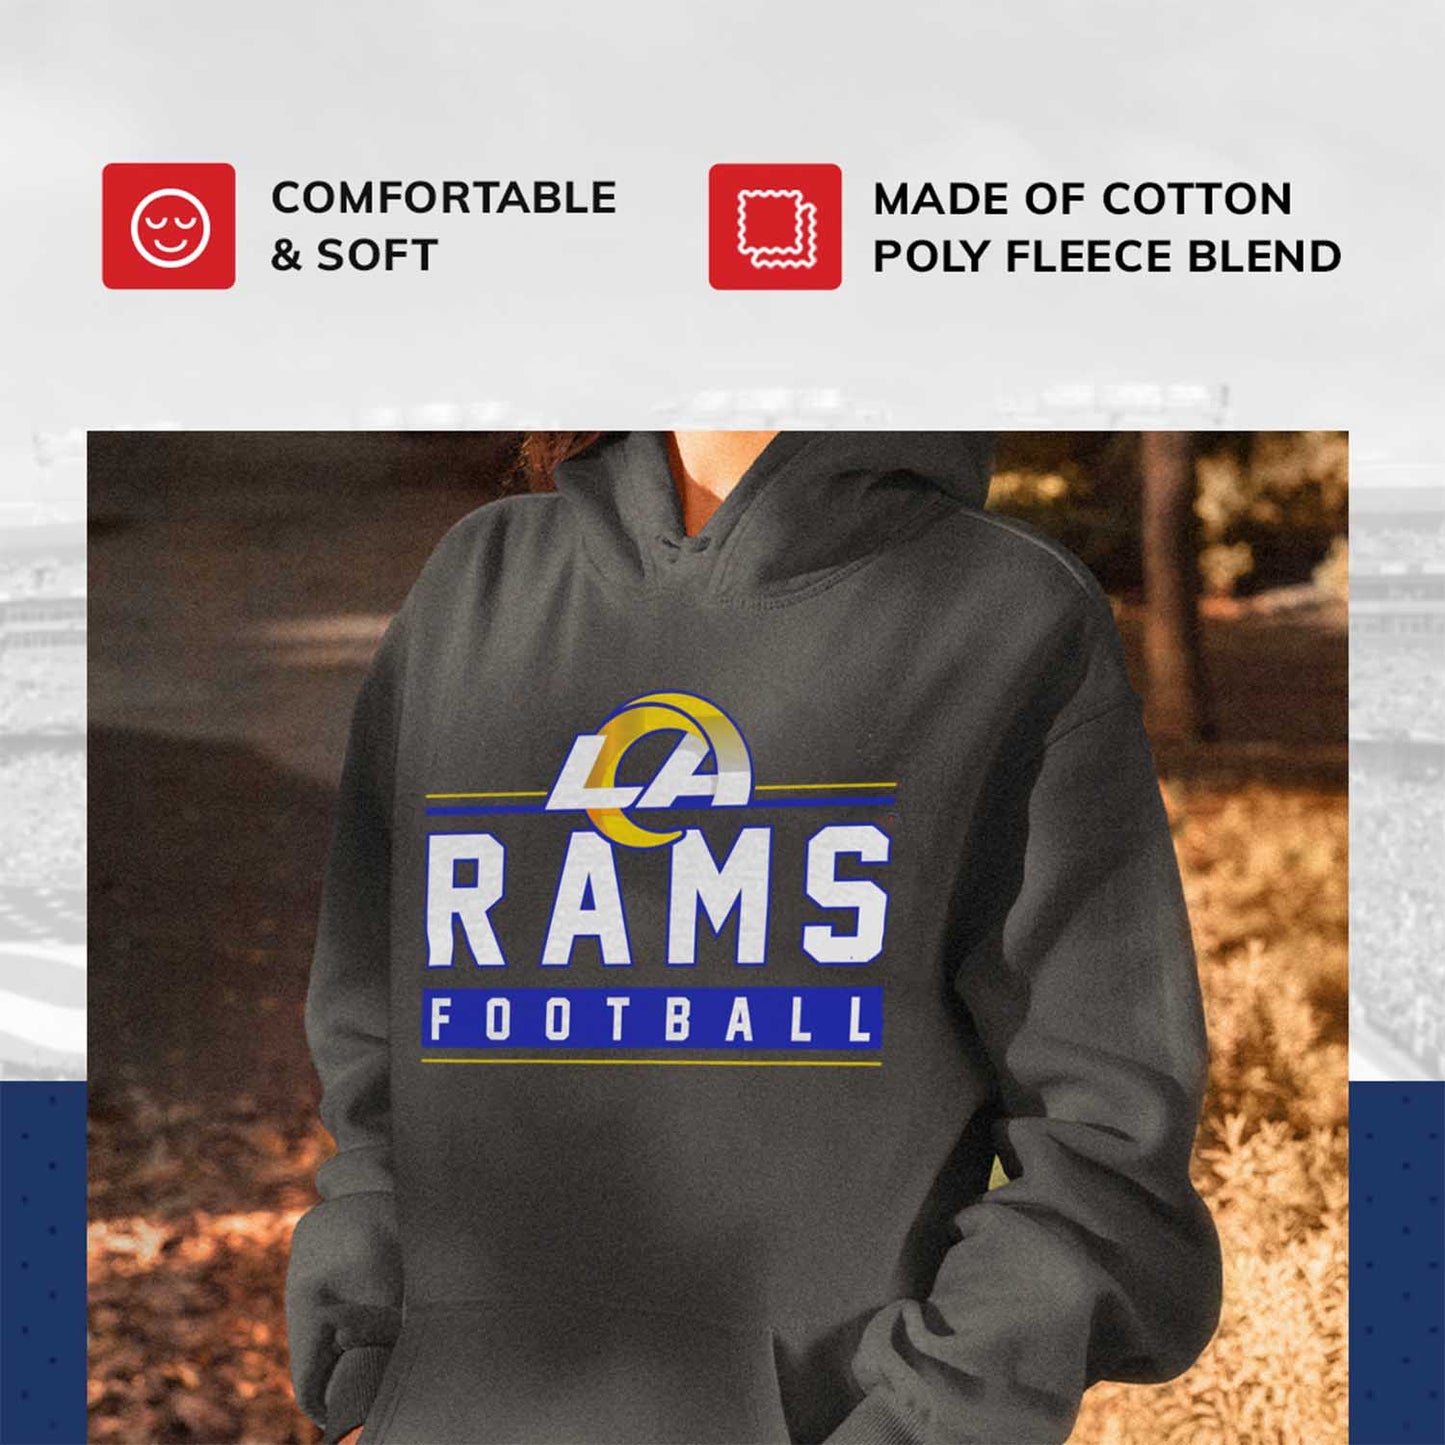 Los Angeles Rams NFL Adult True Fan Hooded Charcoal Sweatshirt - Charcoal